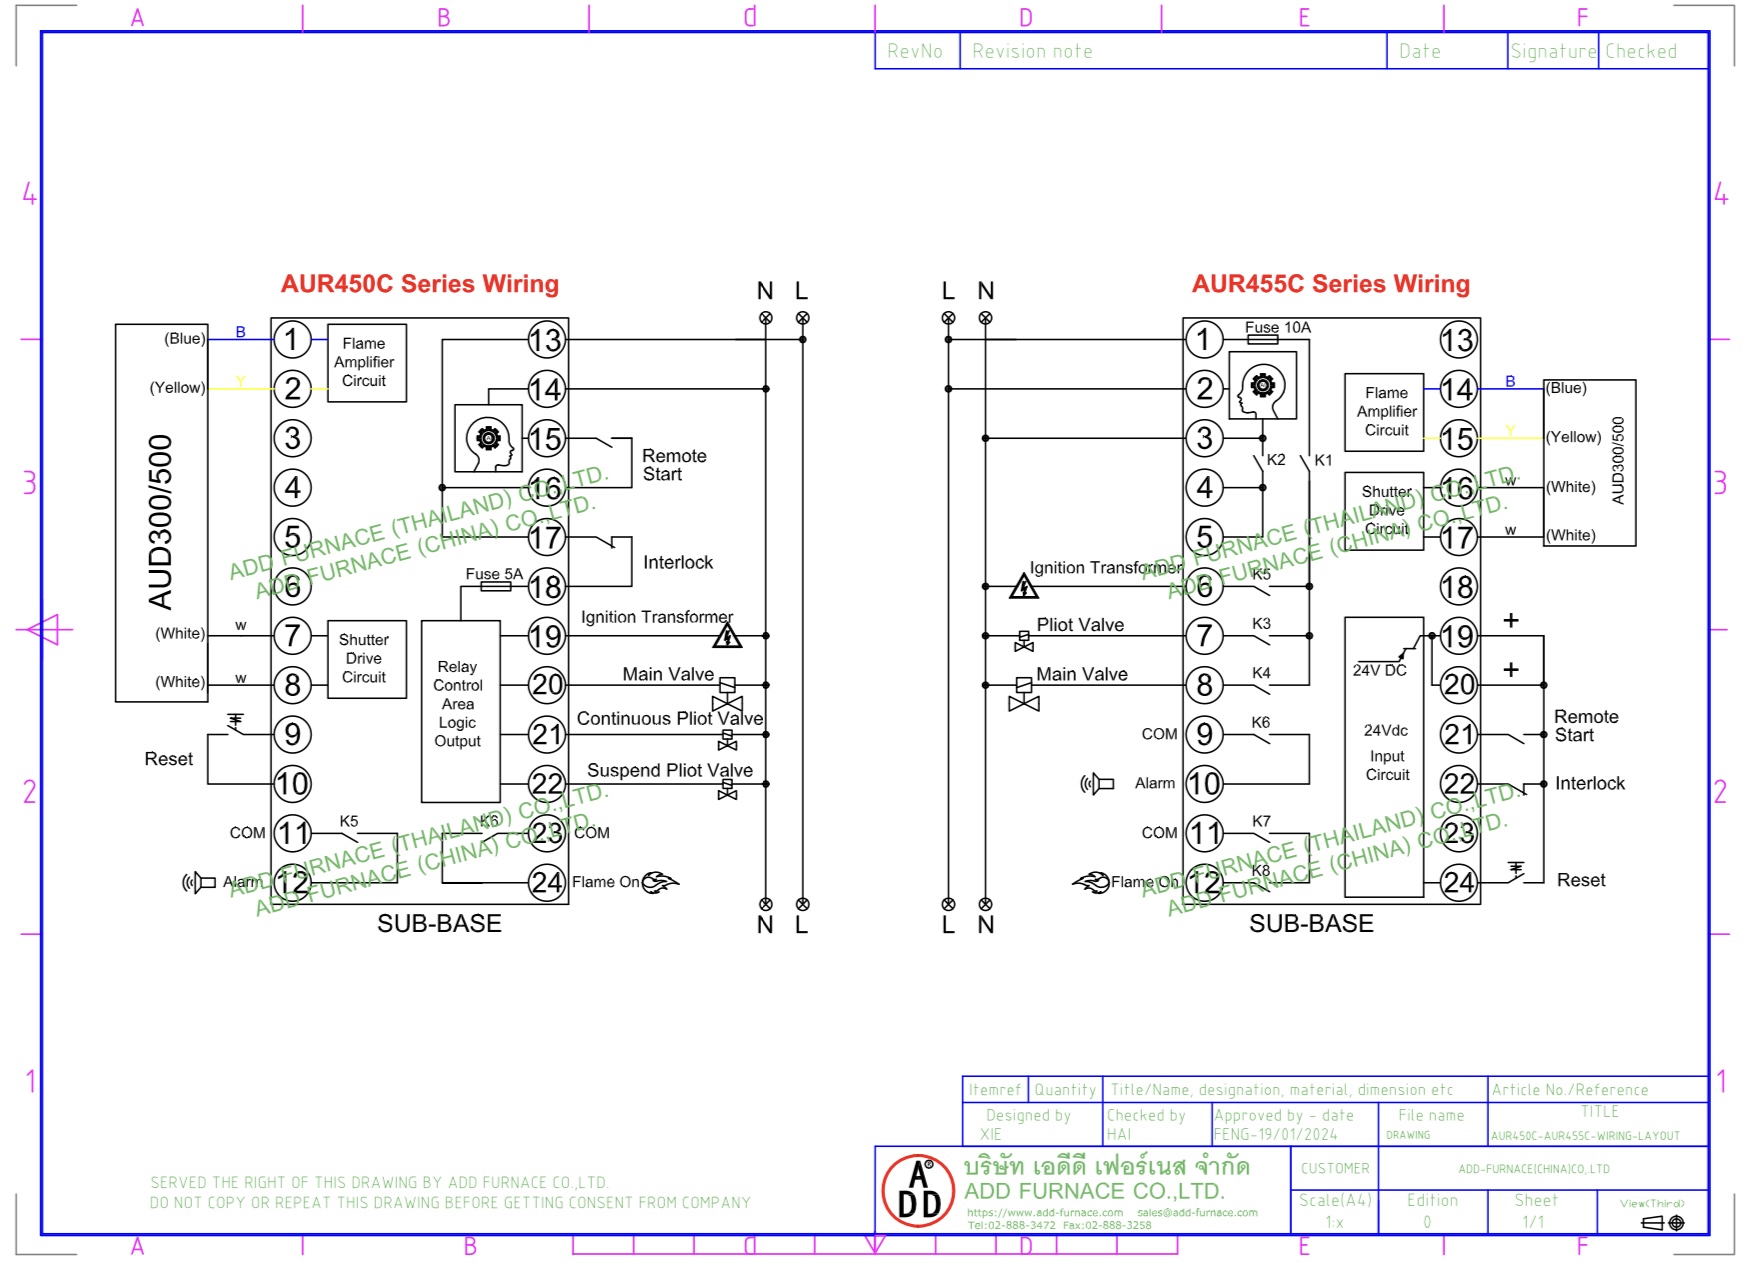 aur450c series with aur455c wiring layout